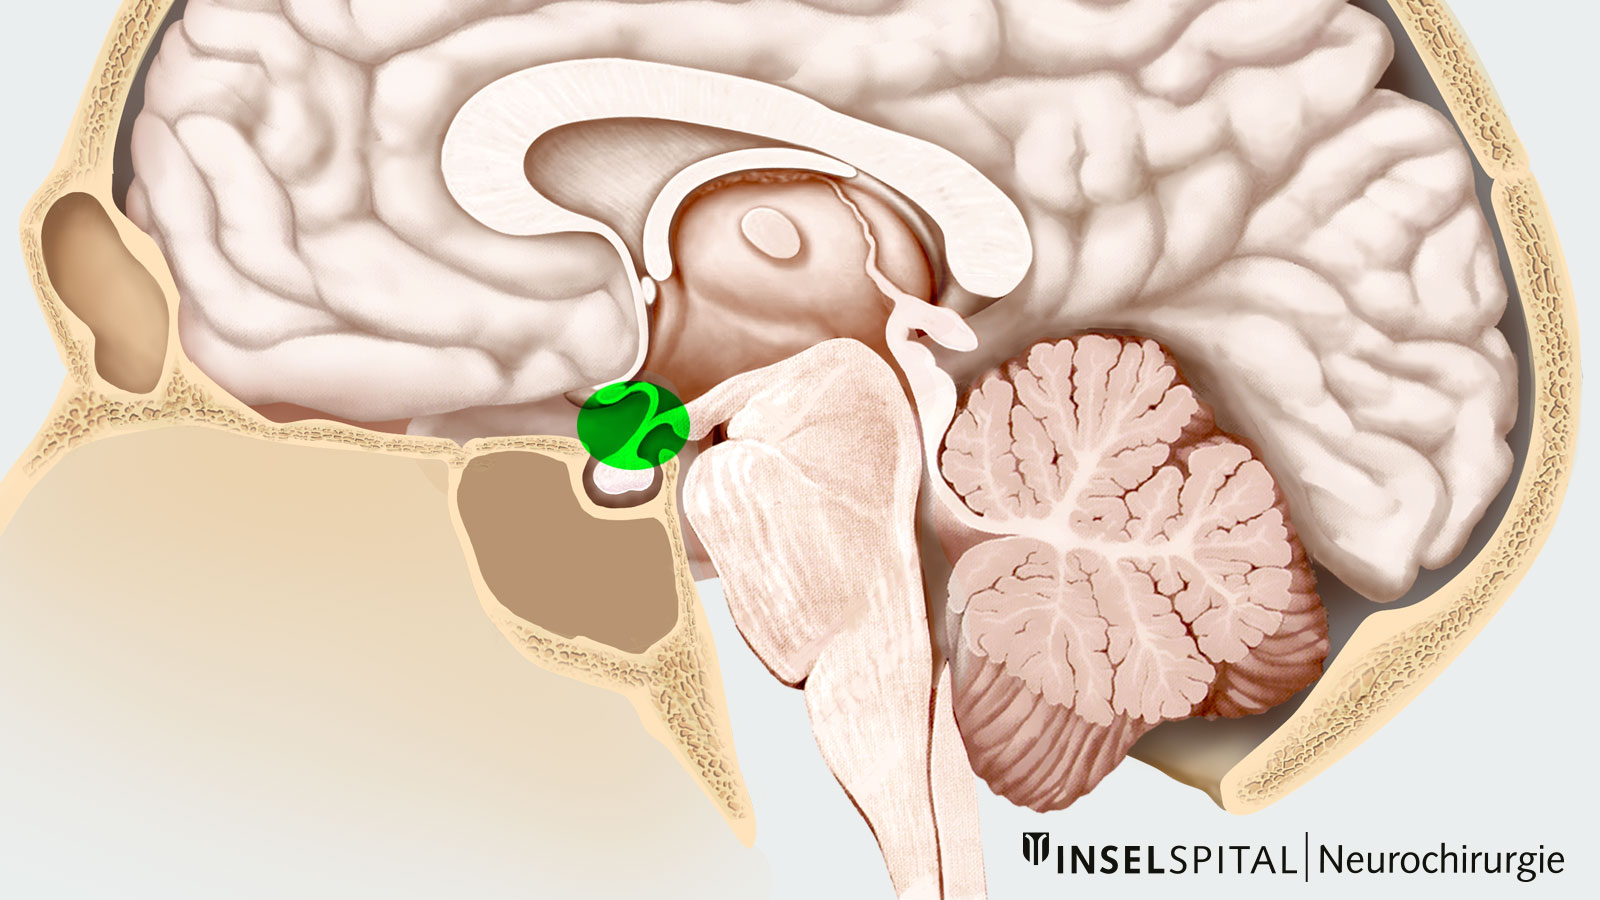 Dessin du crâne. La zone où les craniopharyngiomes se développent normalement est indiquée en vert.